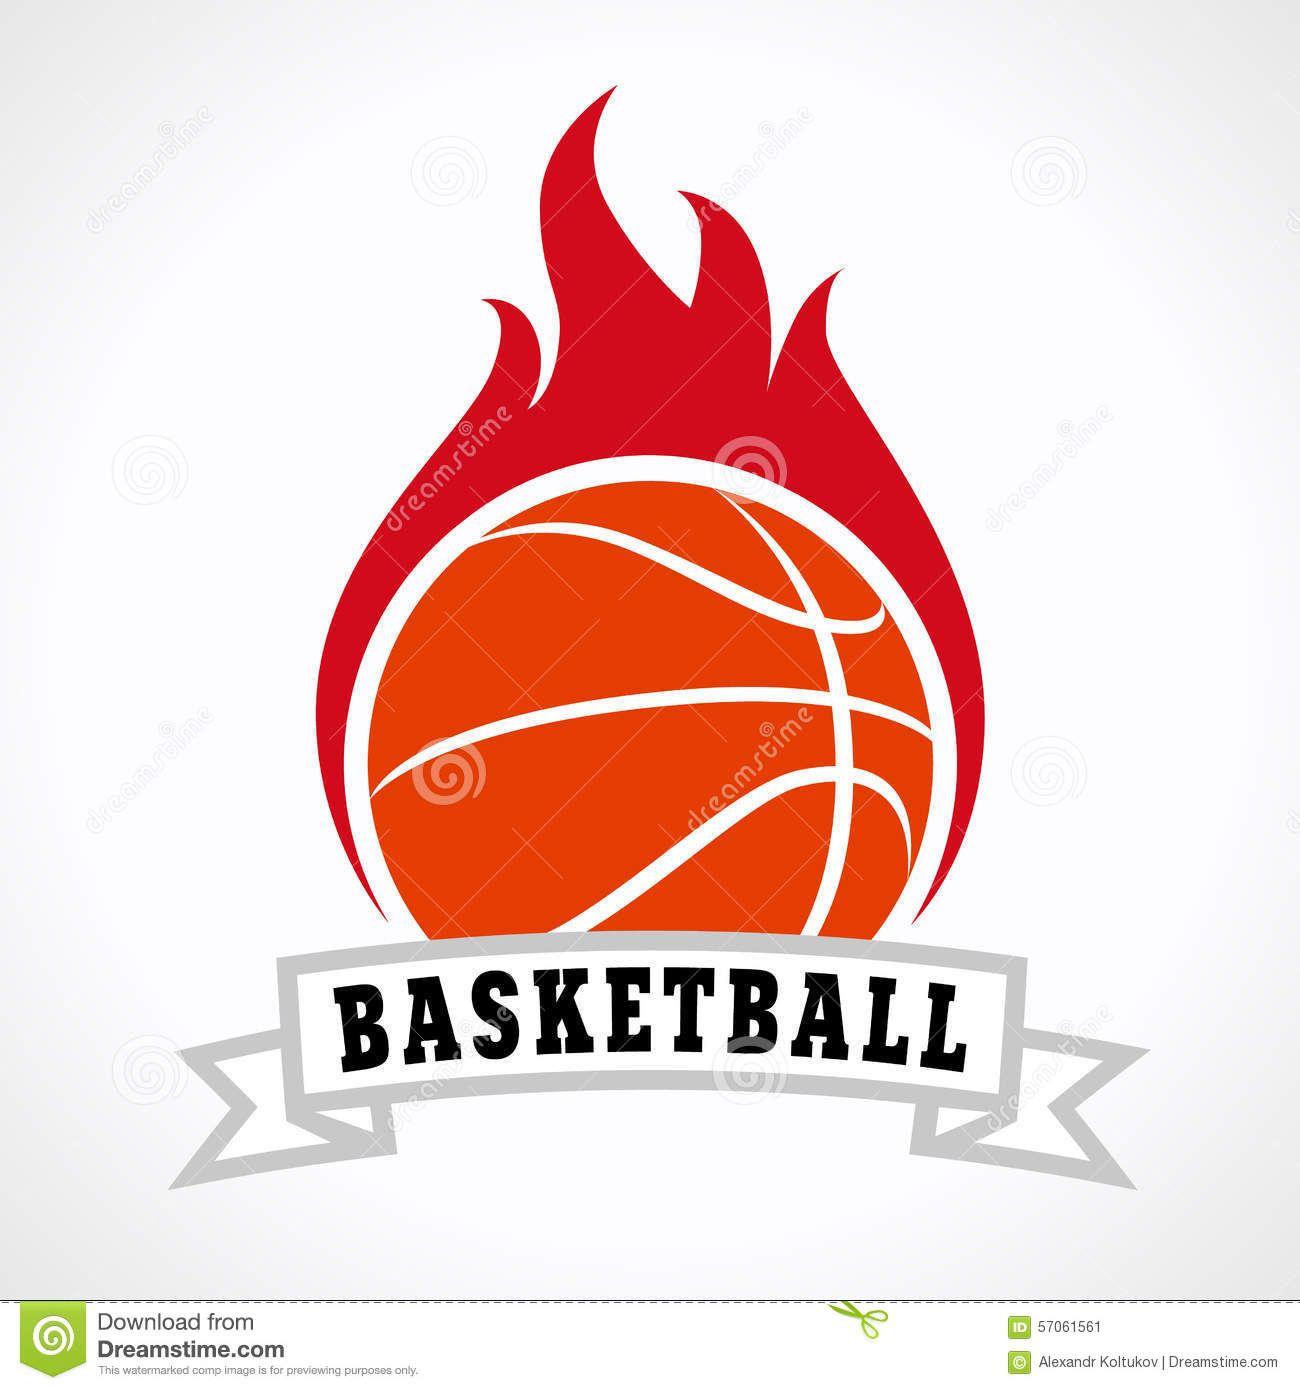 Flaming W Logo - Basketball flame Logos